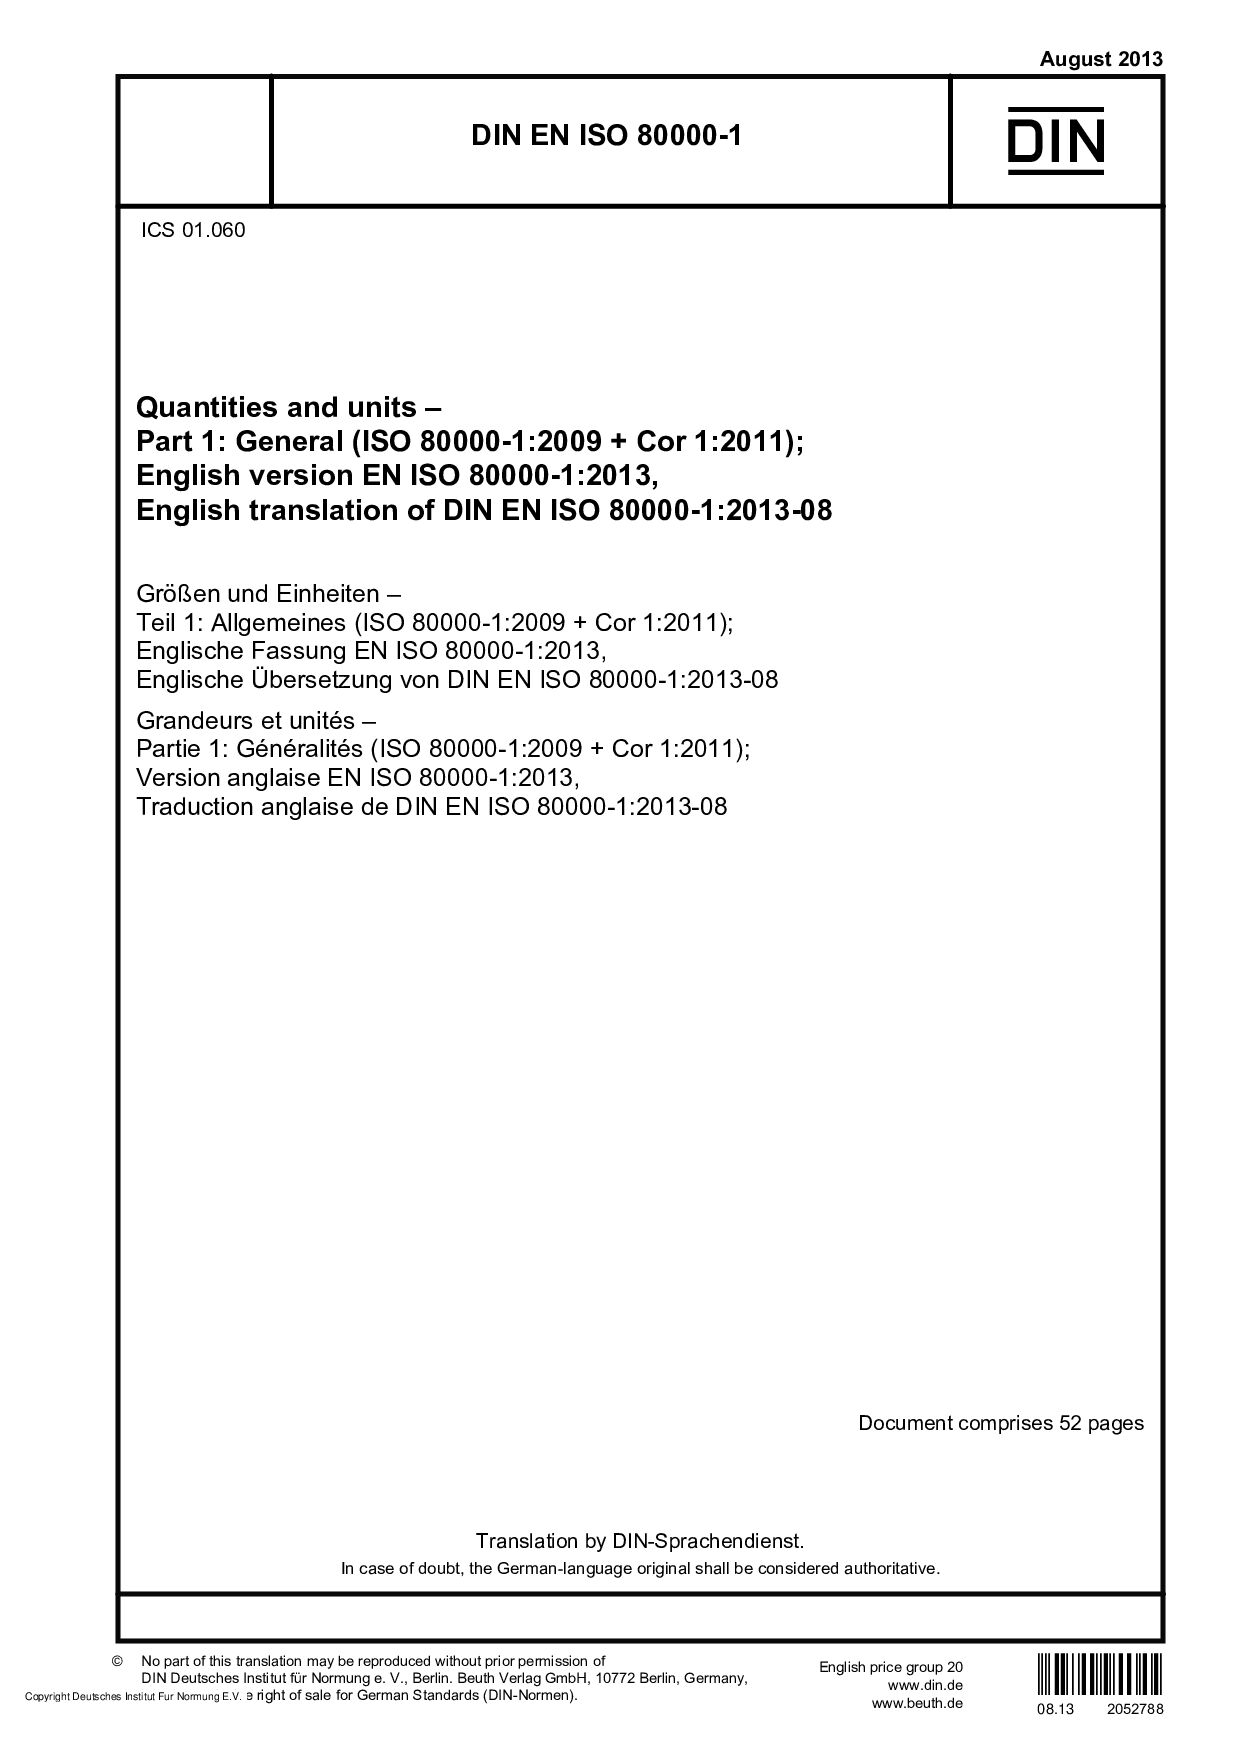 DIN EN ISO 80000-1-2013